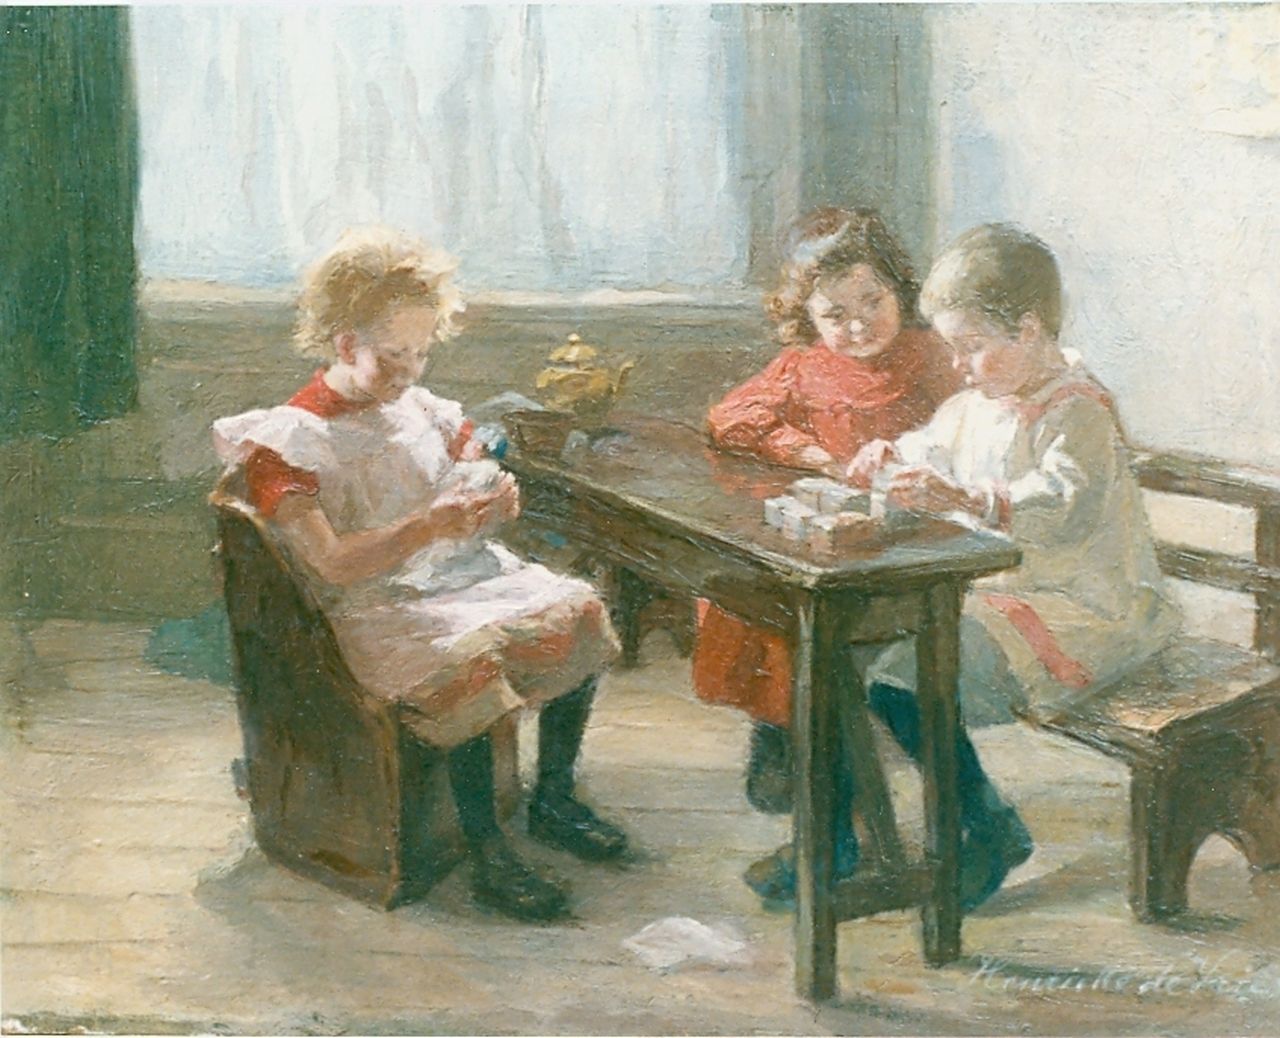 Vries S.C.H. de | Susanna Cornelia 'Henriëtte' de Vries, Children playing, Öl auf Leinwand 25,5 x 32,7 cm, signed l.r.